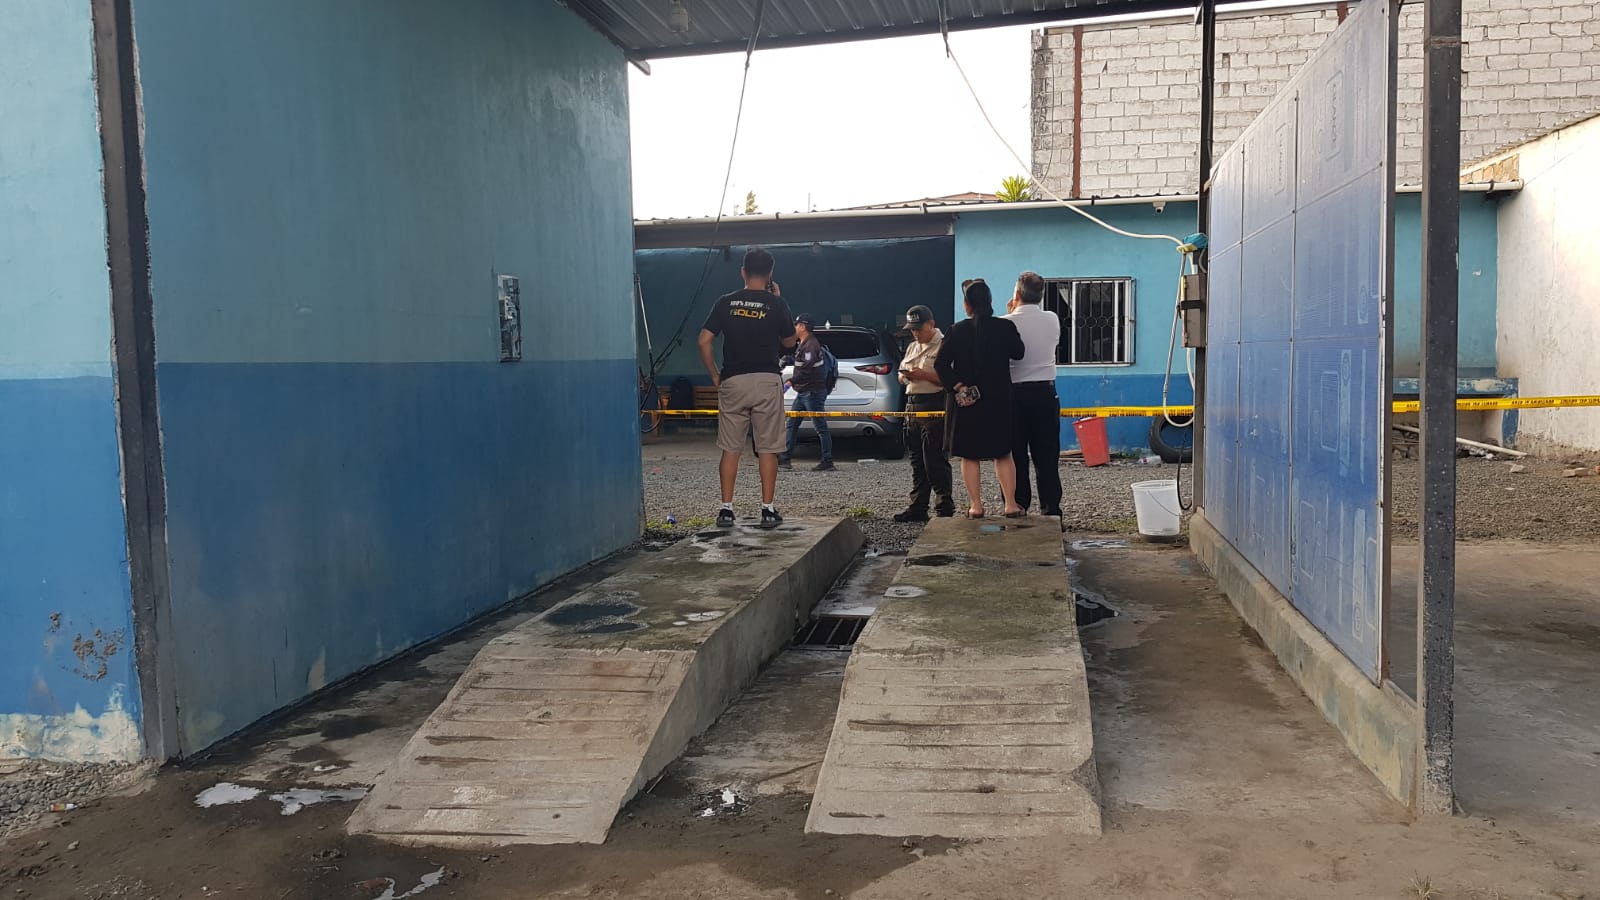 Violencia desatada: asesinaron a balazos a un venezolano en Ecuador